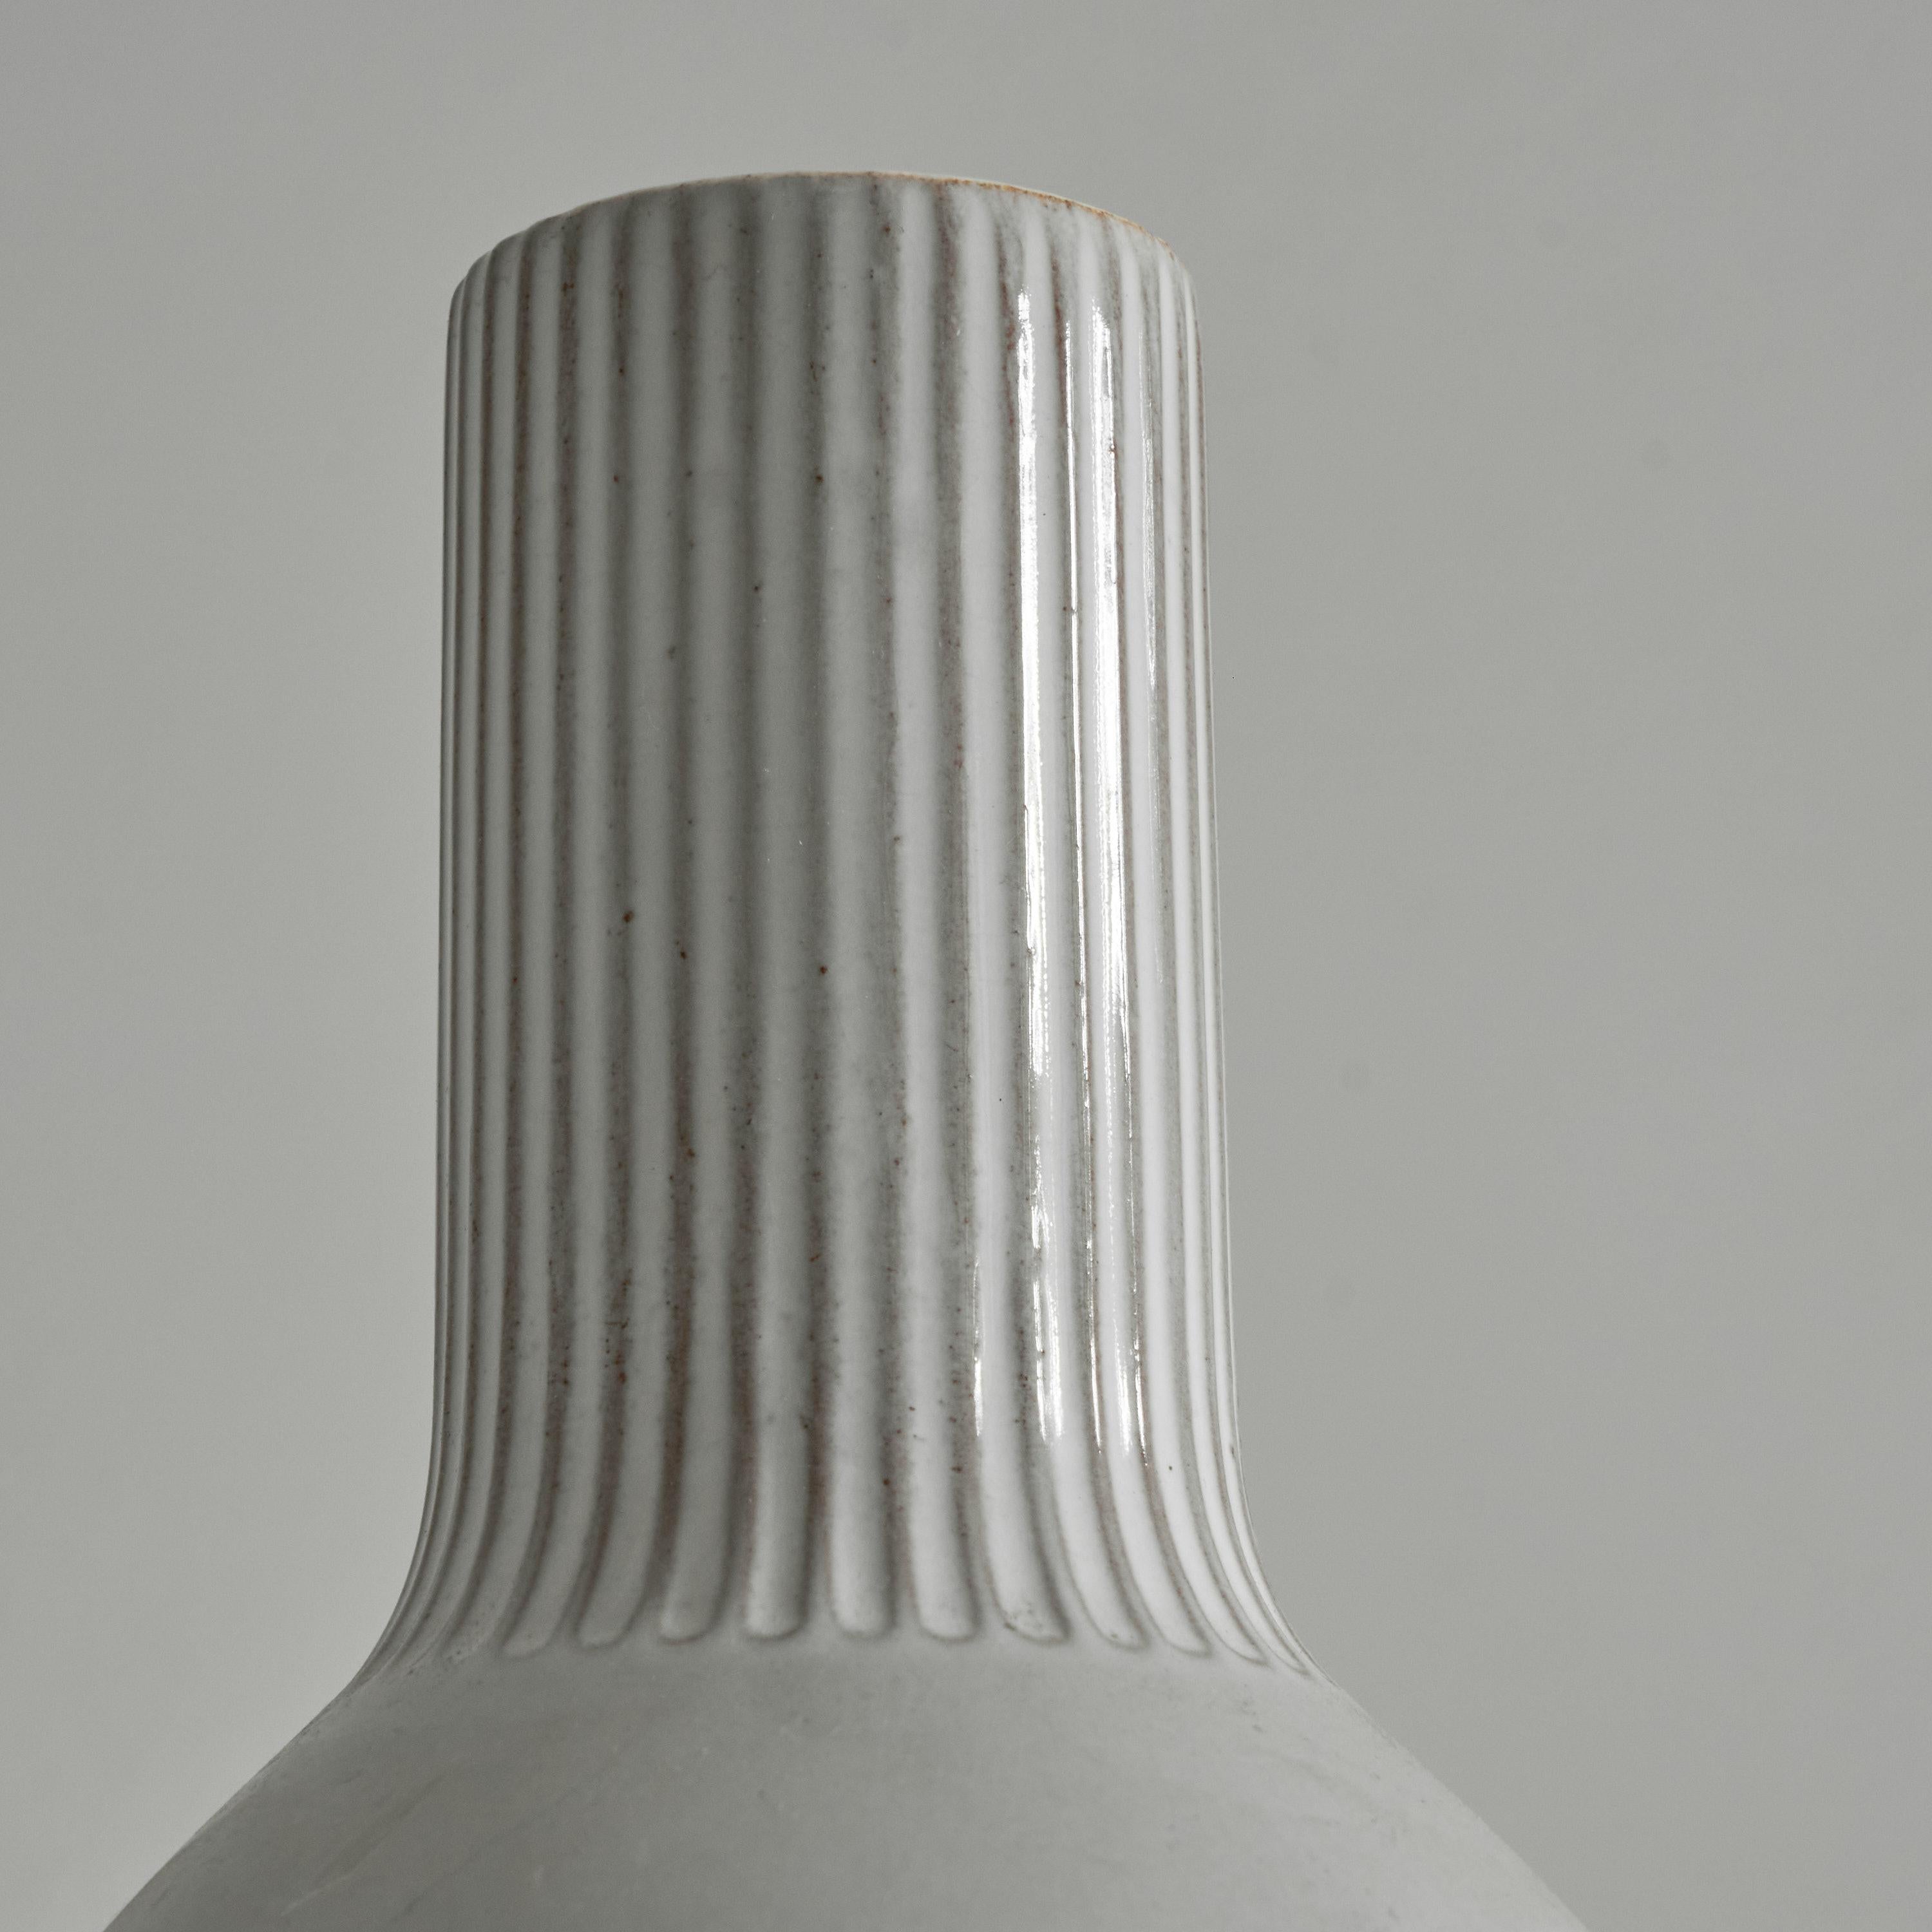 Dutch Willem Visser Sphinx Maastricht 'V6' Studio Pottery Vase, 1950s For Sale